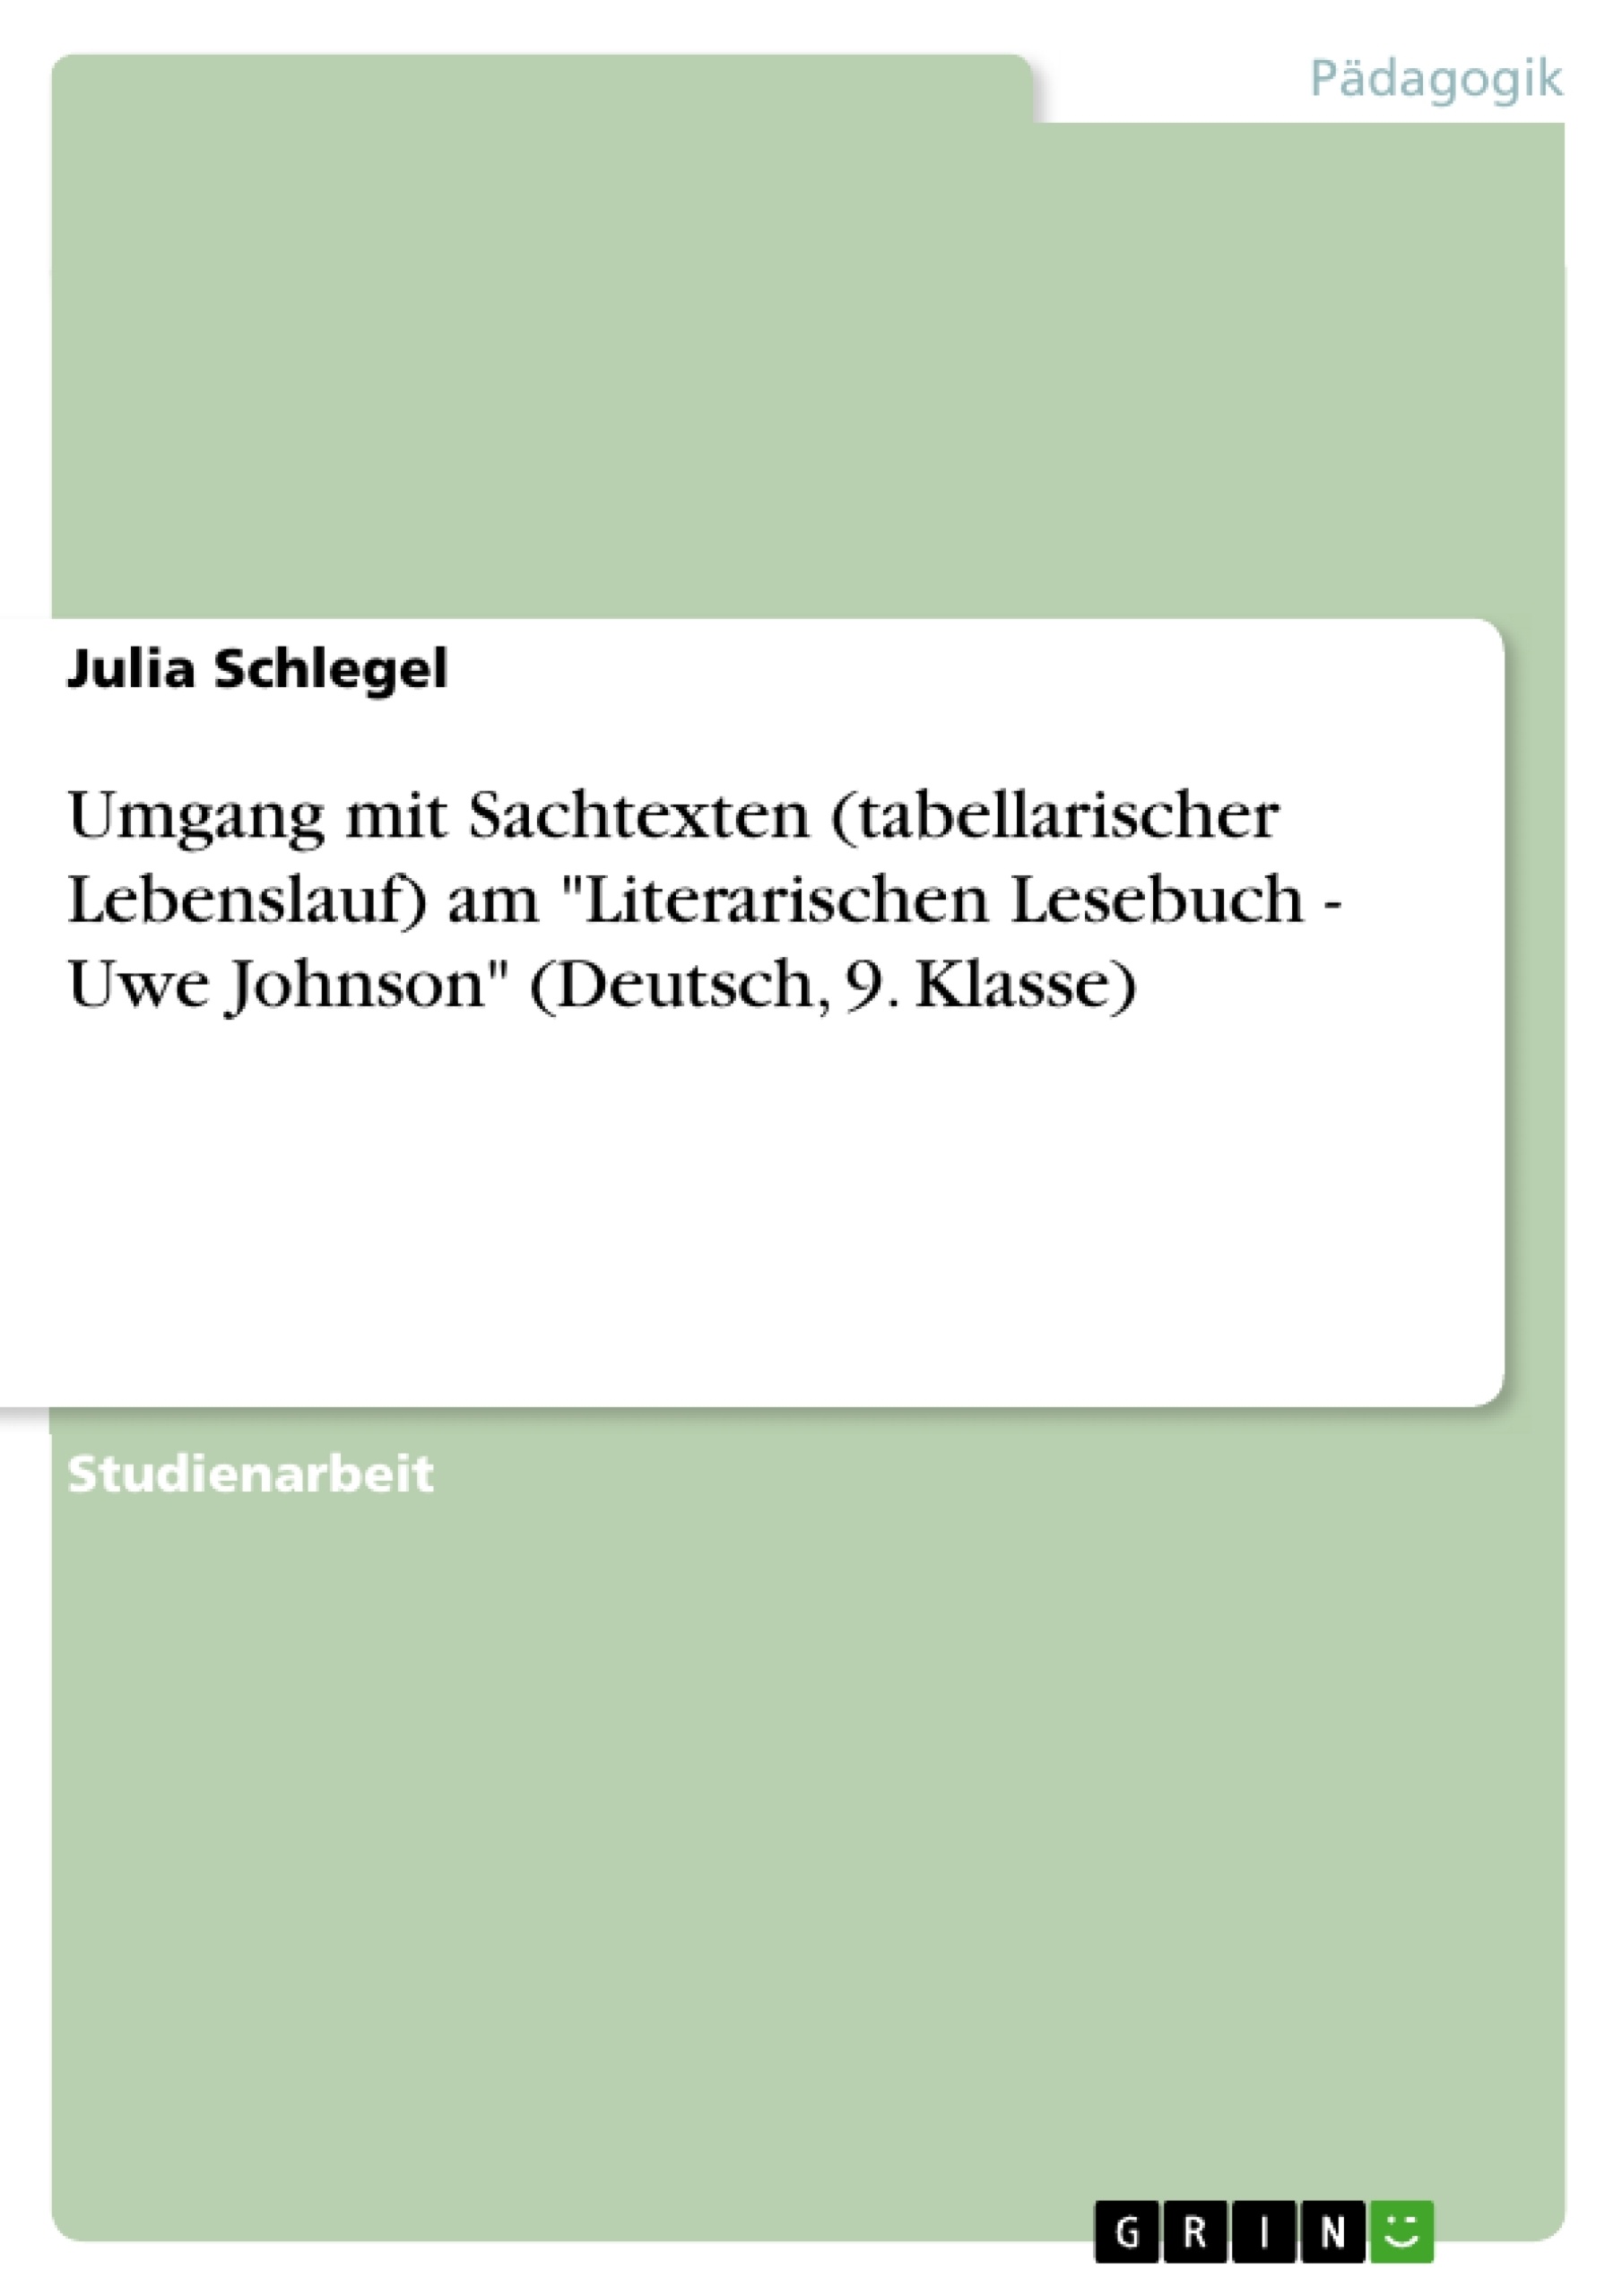 Title: Umgang mit Sachtexten (tabellarischer Lebenslauf) am "Literarischen Lesebuch - Uwe Johnson" (Deutsch, 9. Klasse)